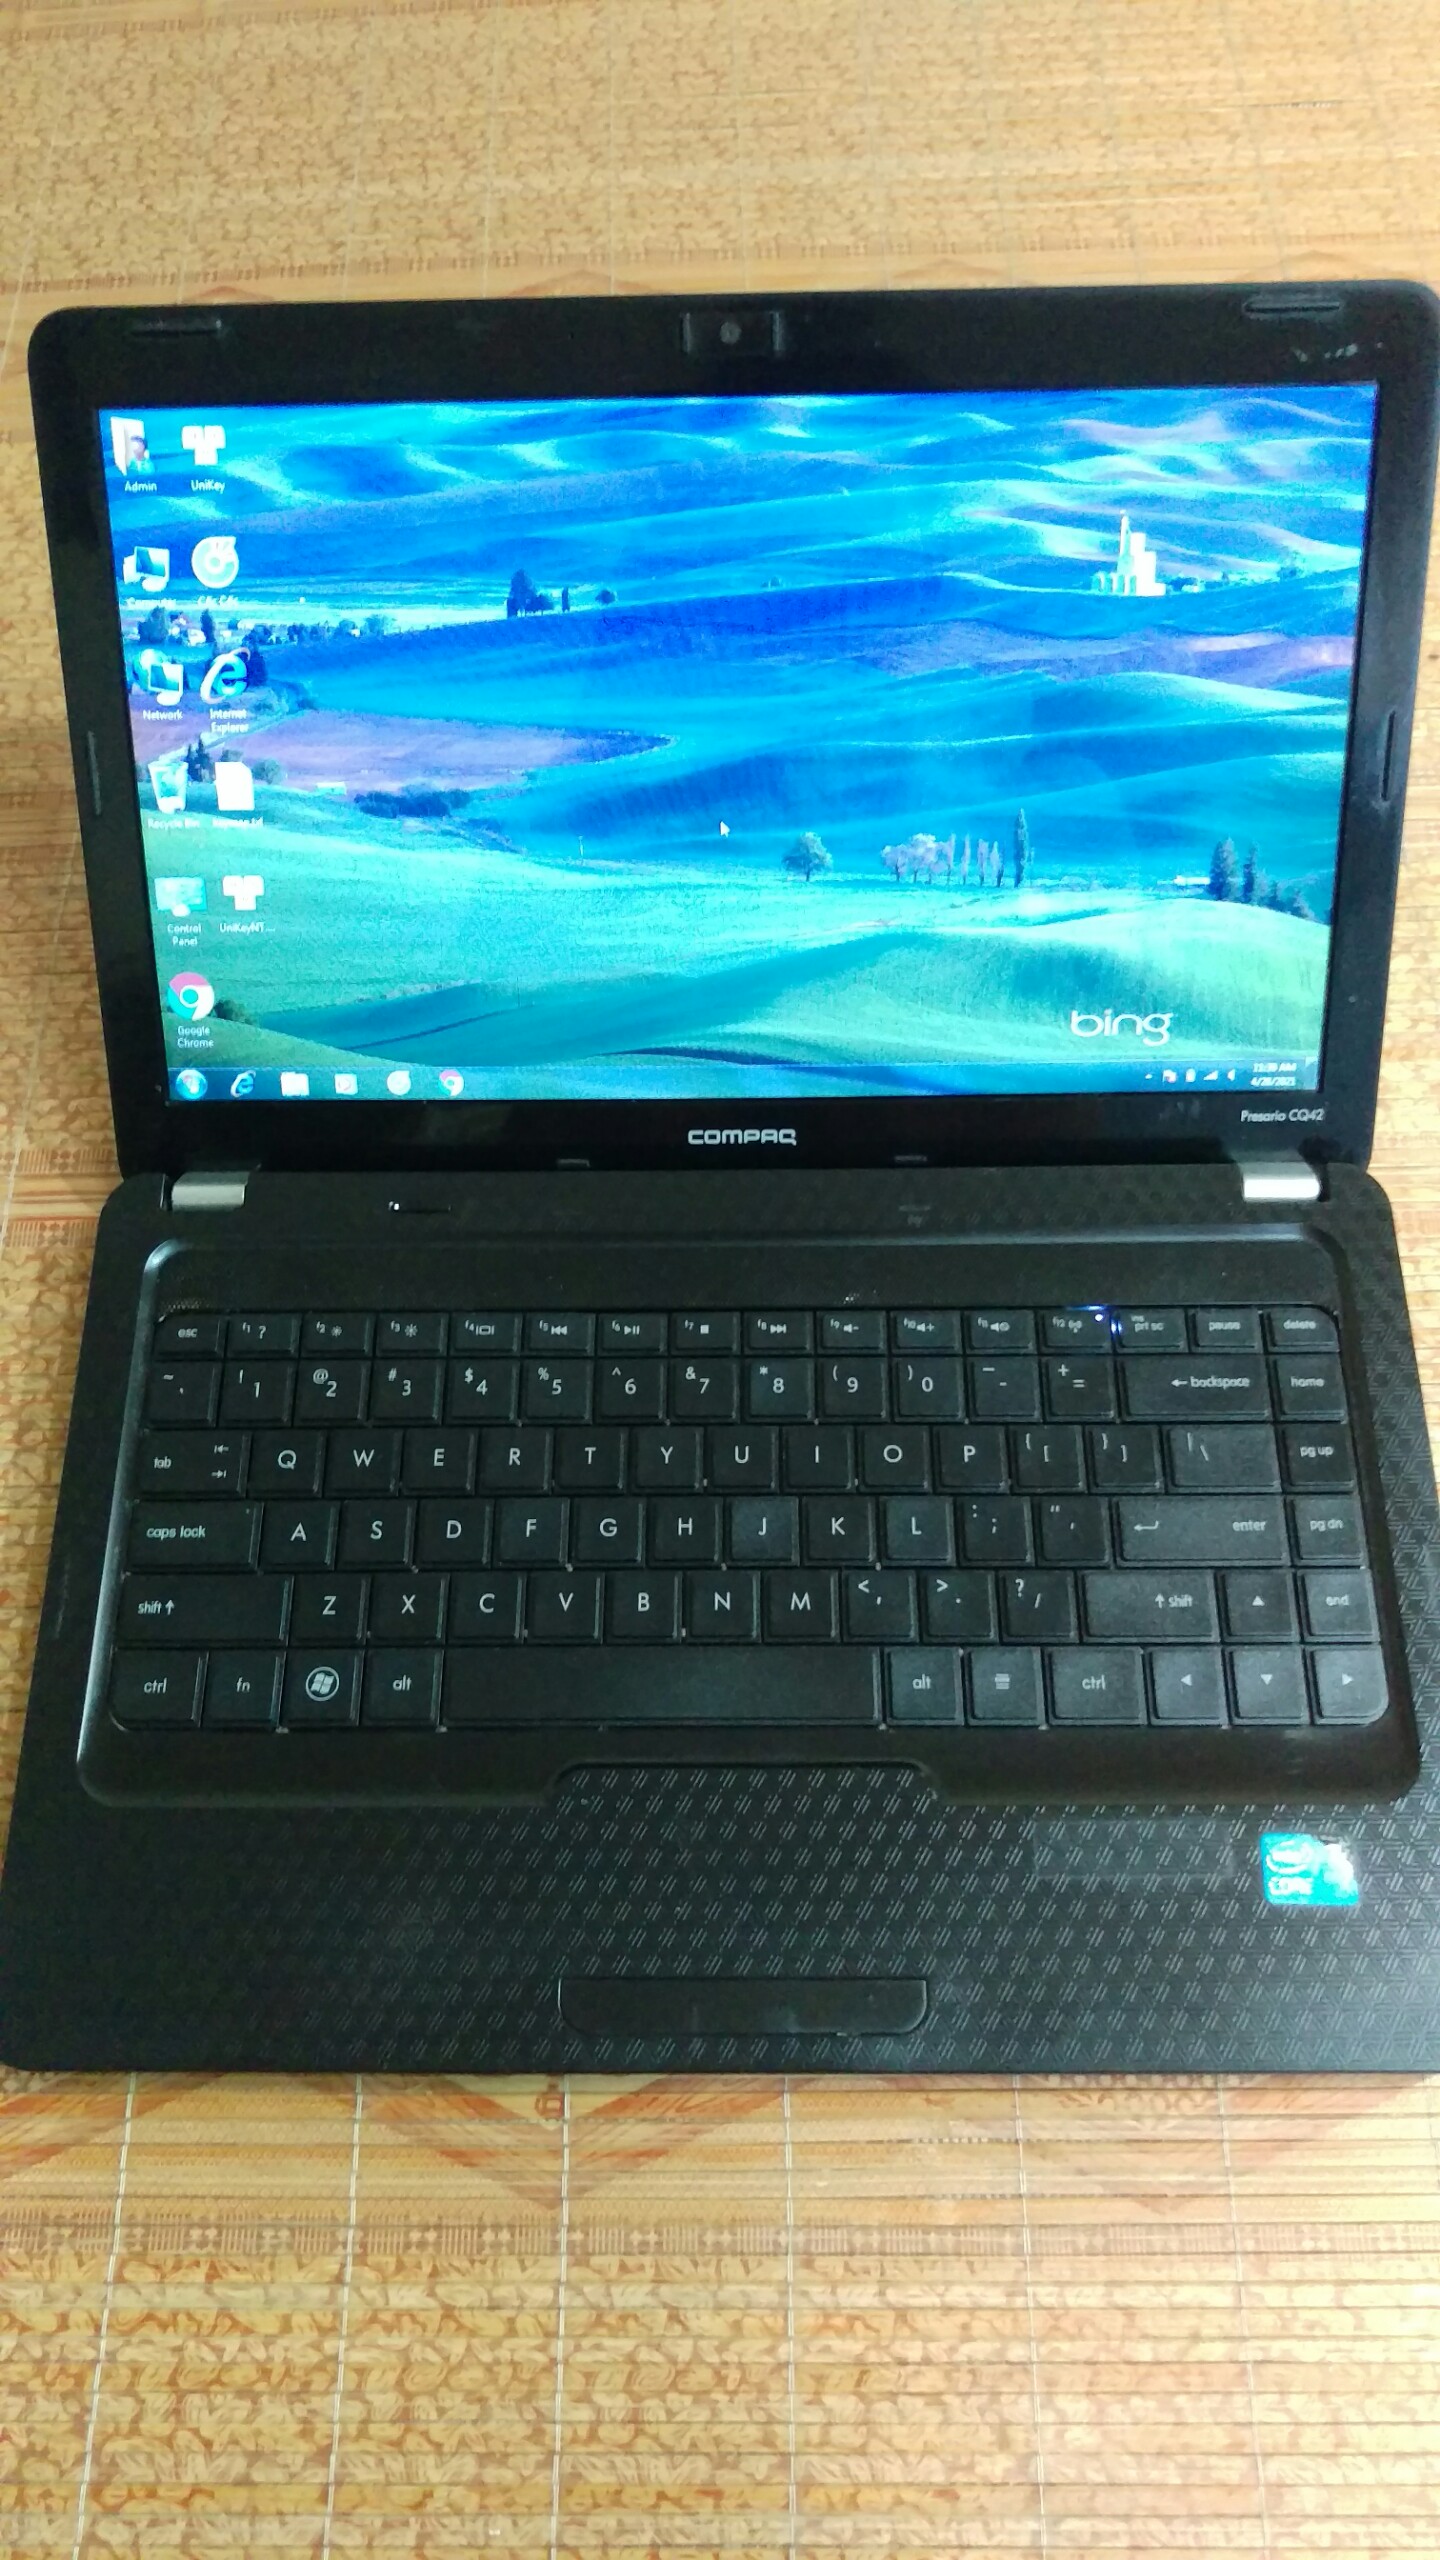 Laptop HP CQ42 Intel Pentium T4500 2.3Ghz Ram 4G SSD 120G Windows 10 Pro